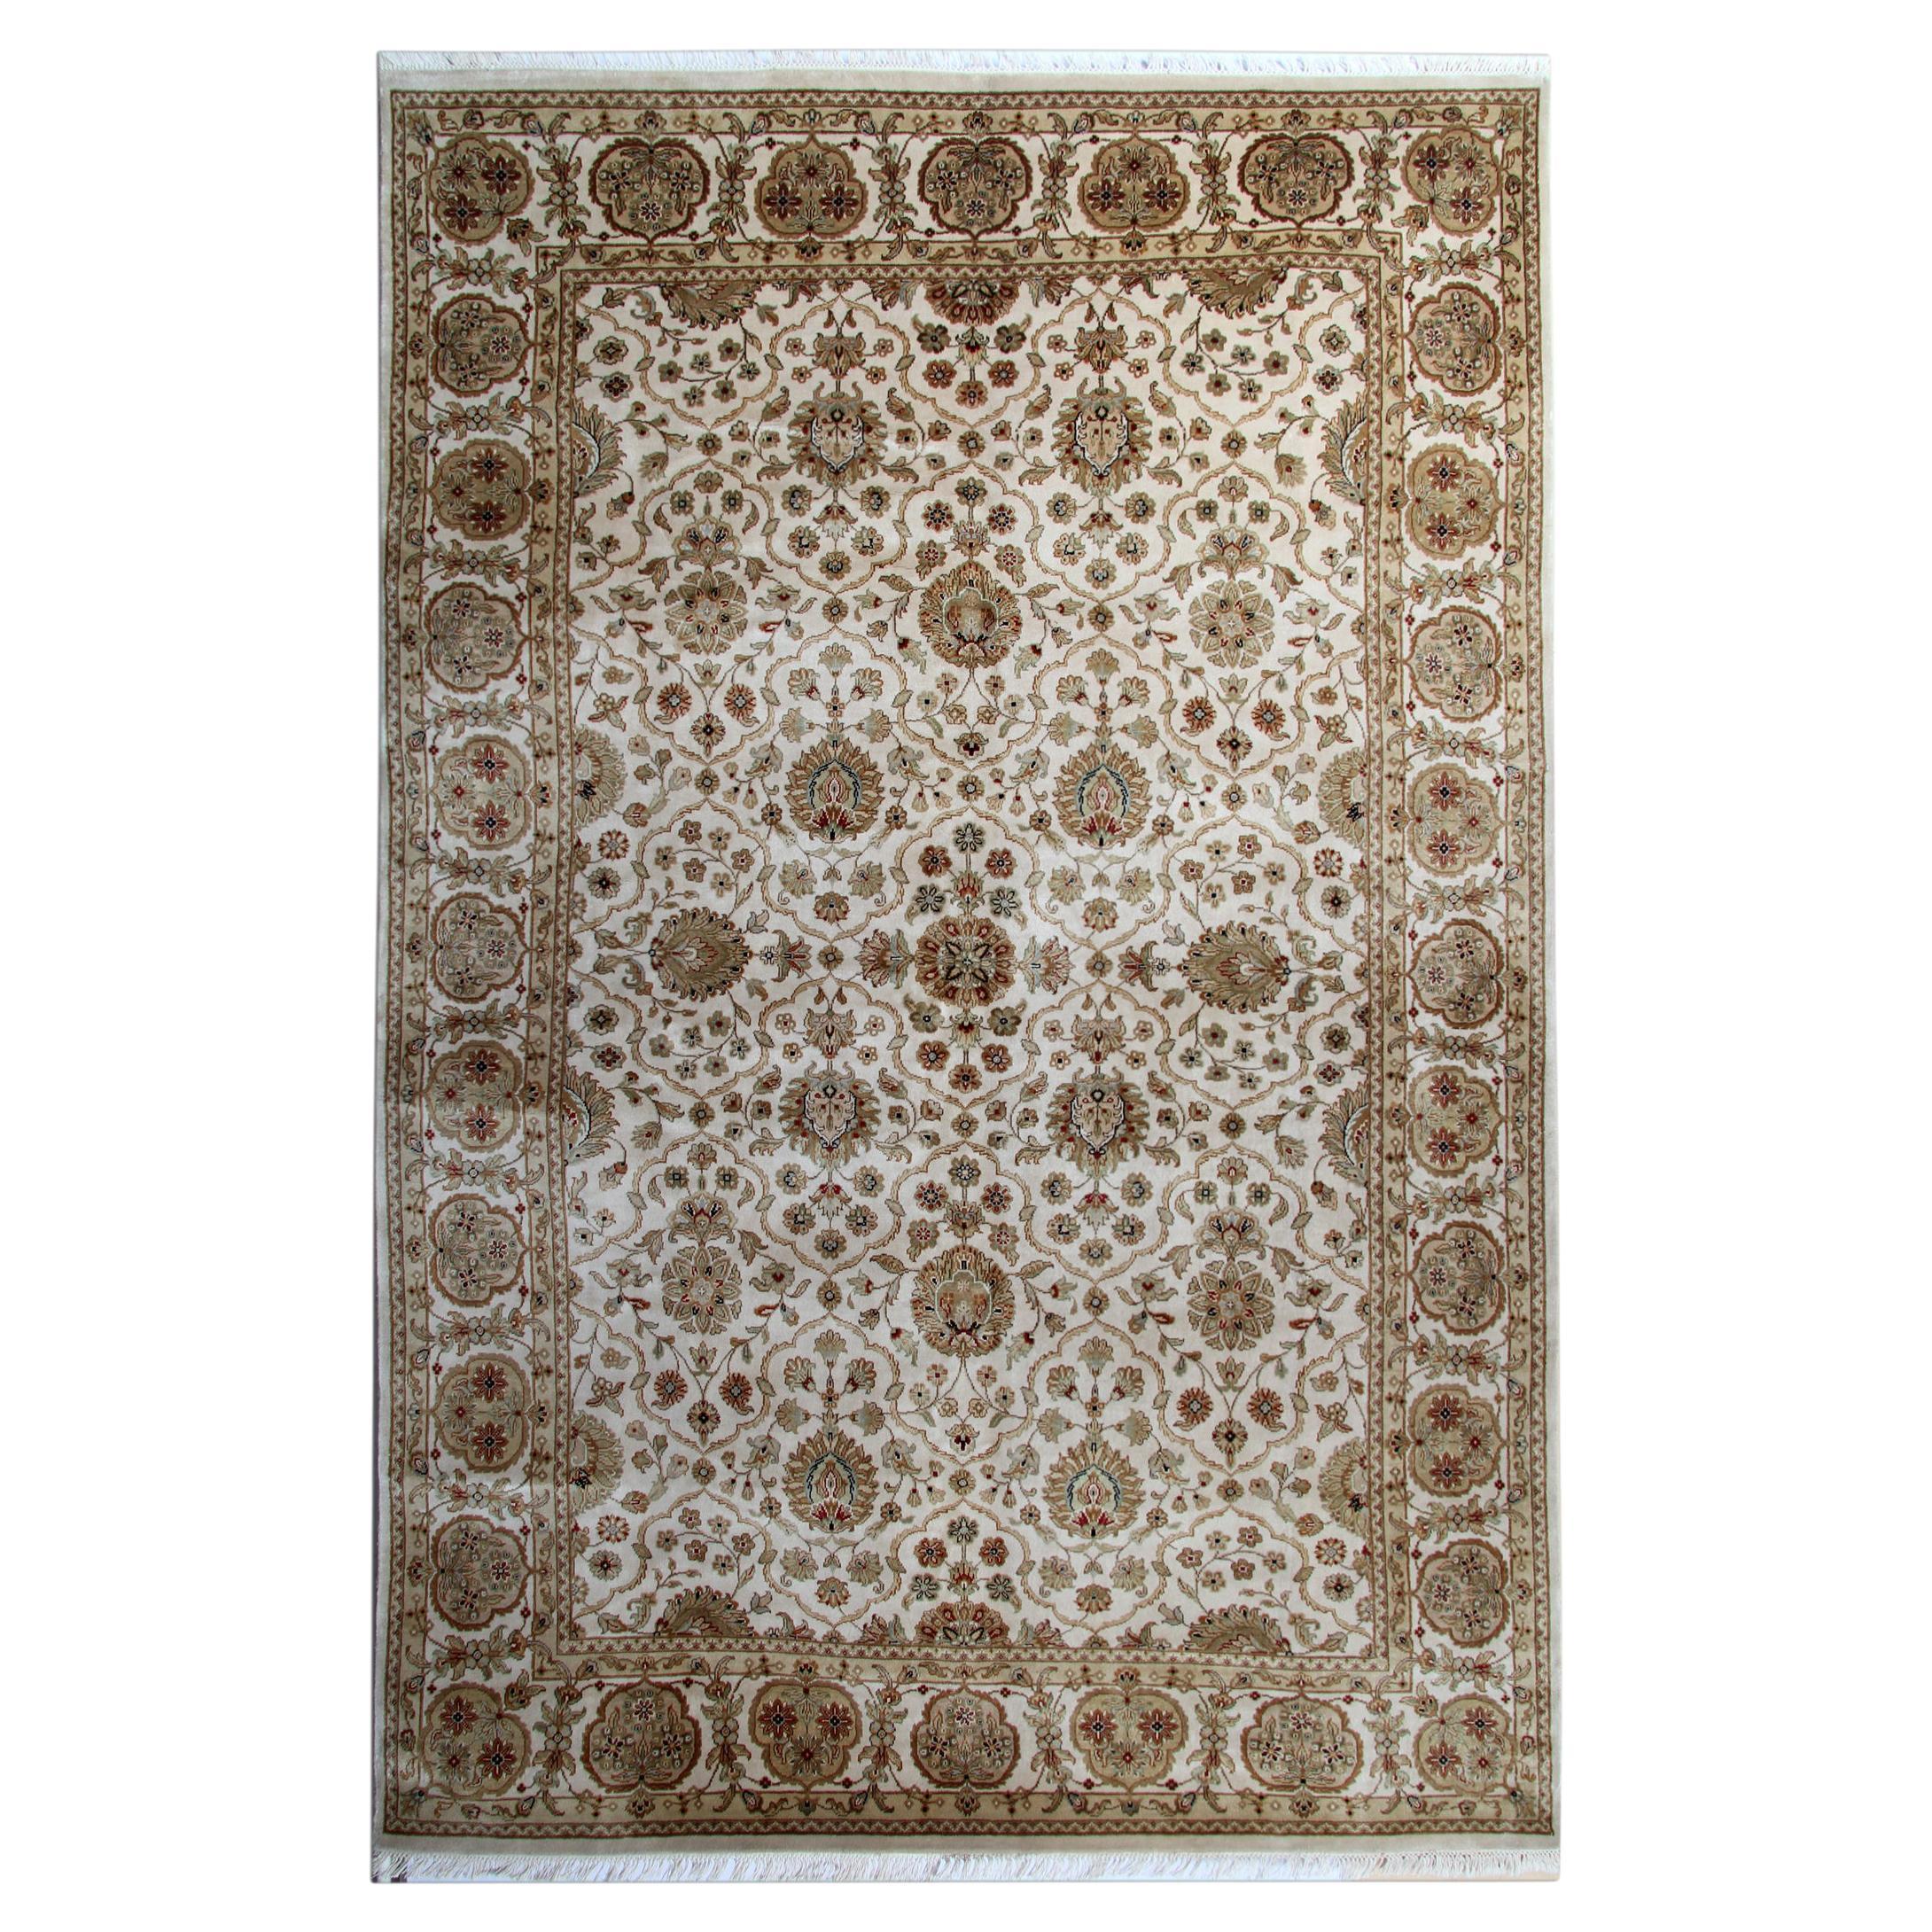 Traditioneller handgefertigter orientalischer Teppich aus Wolle im Ziegler-Stil